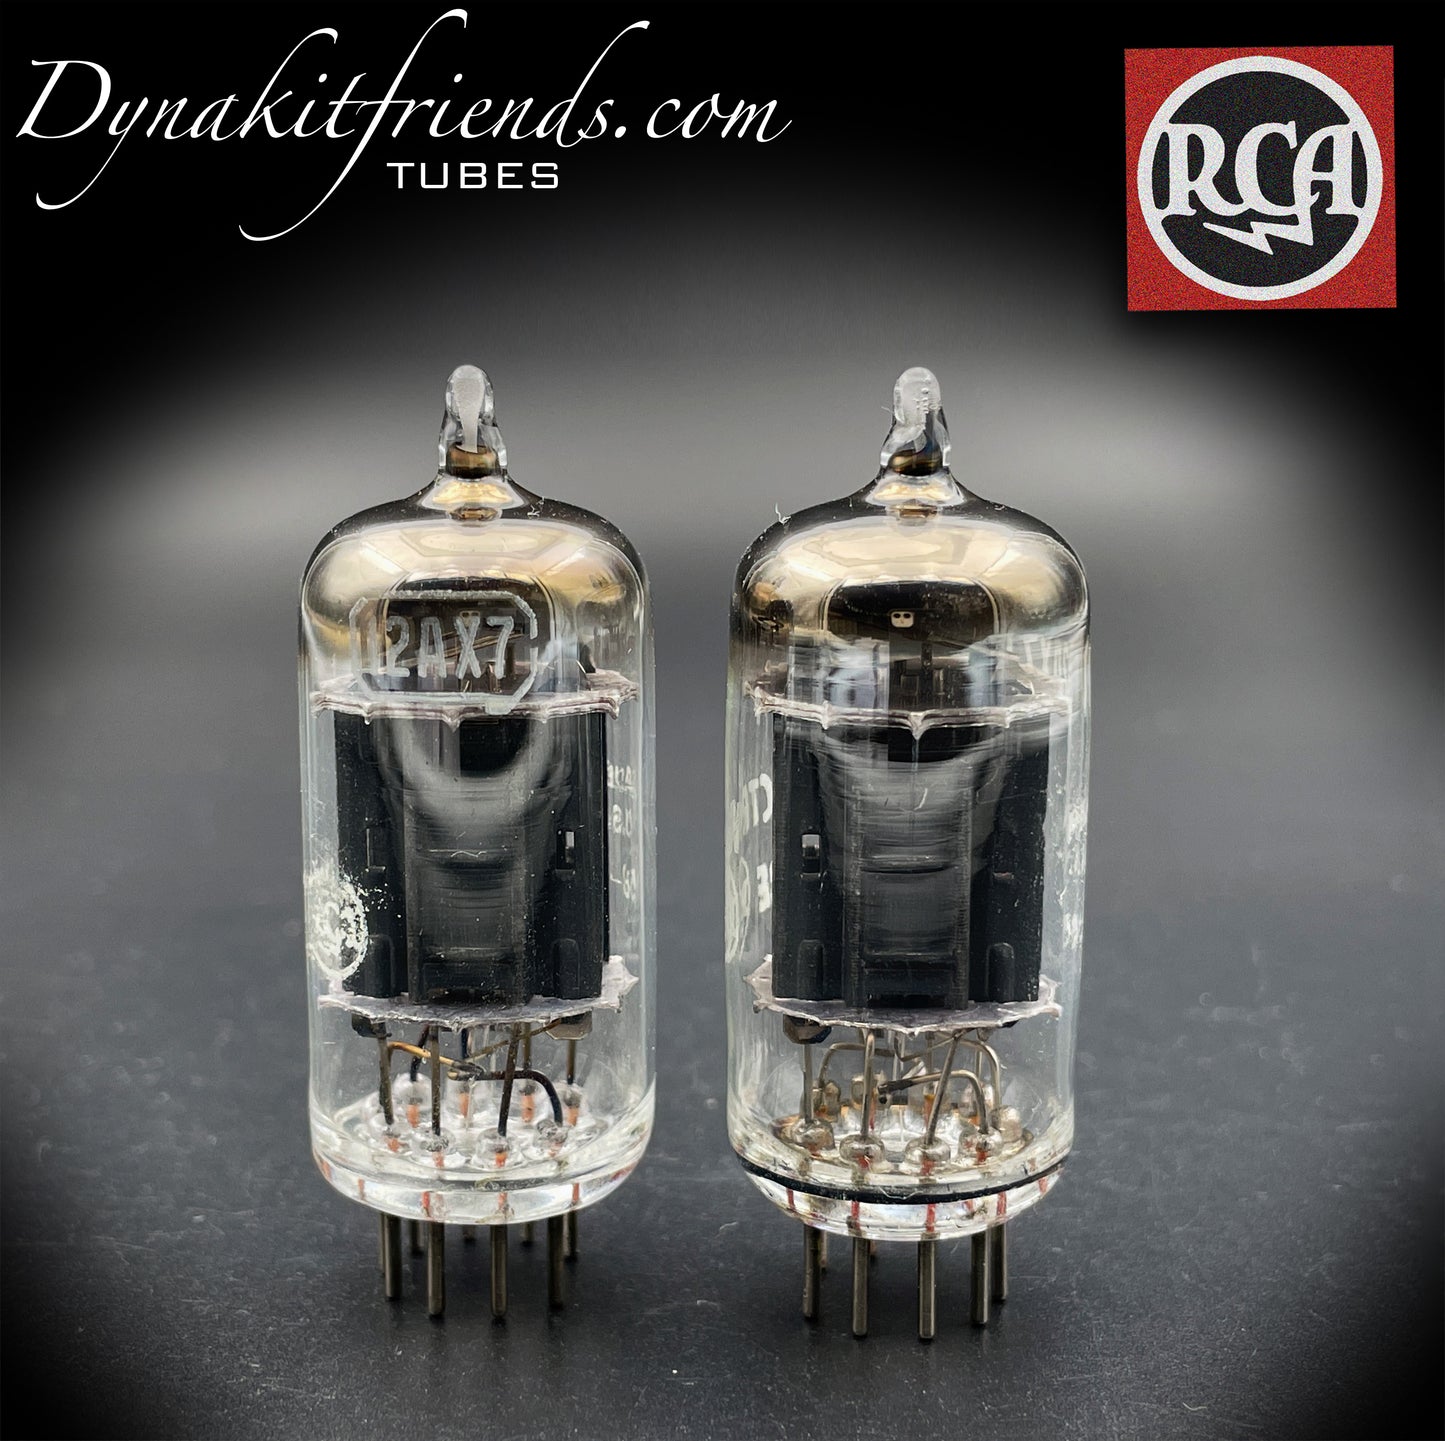 12AX7 (ECC83) RCA longues plaques noires [] tubes assortis à getter inclinés fabriqués aux États-Unis dans les années 50